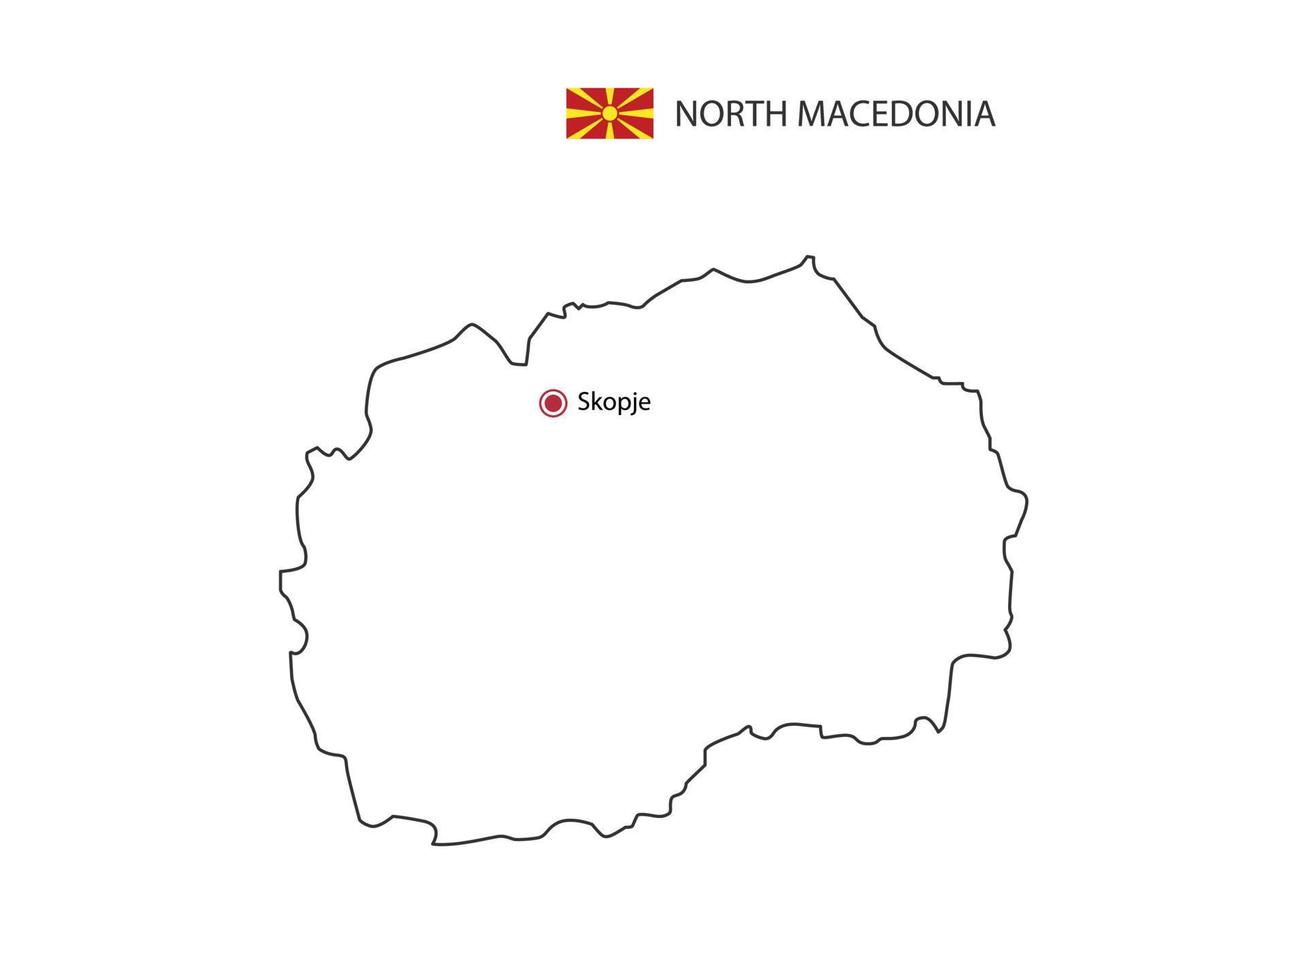 mão desenhar vetor de linha preta fina do mapa da Macedônia do Norte com capital skopje em fundo branco.